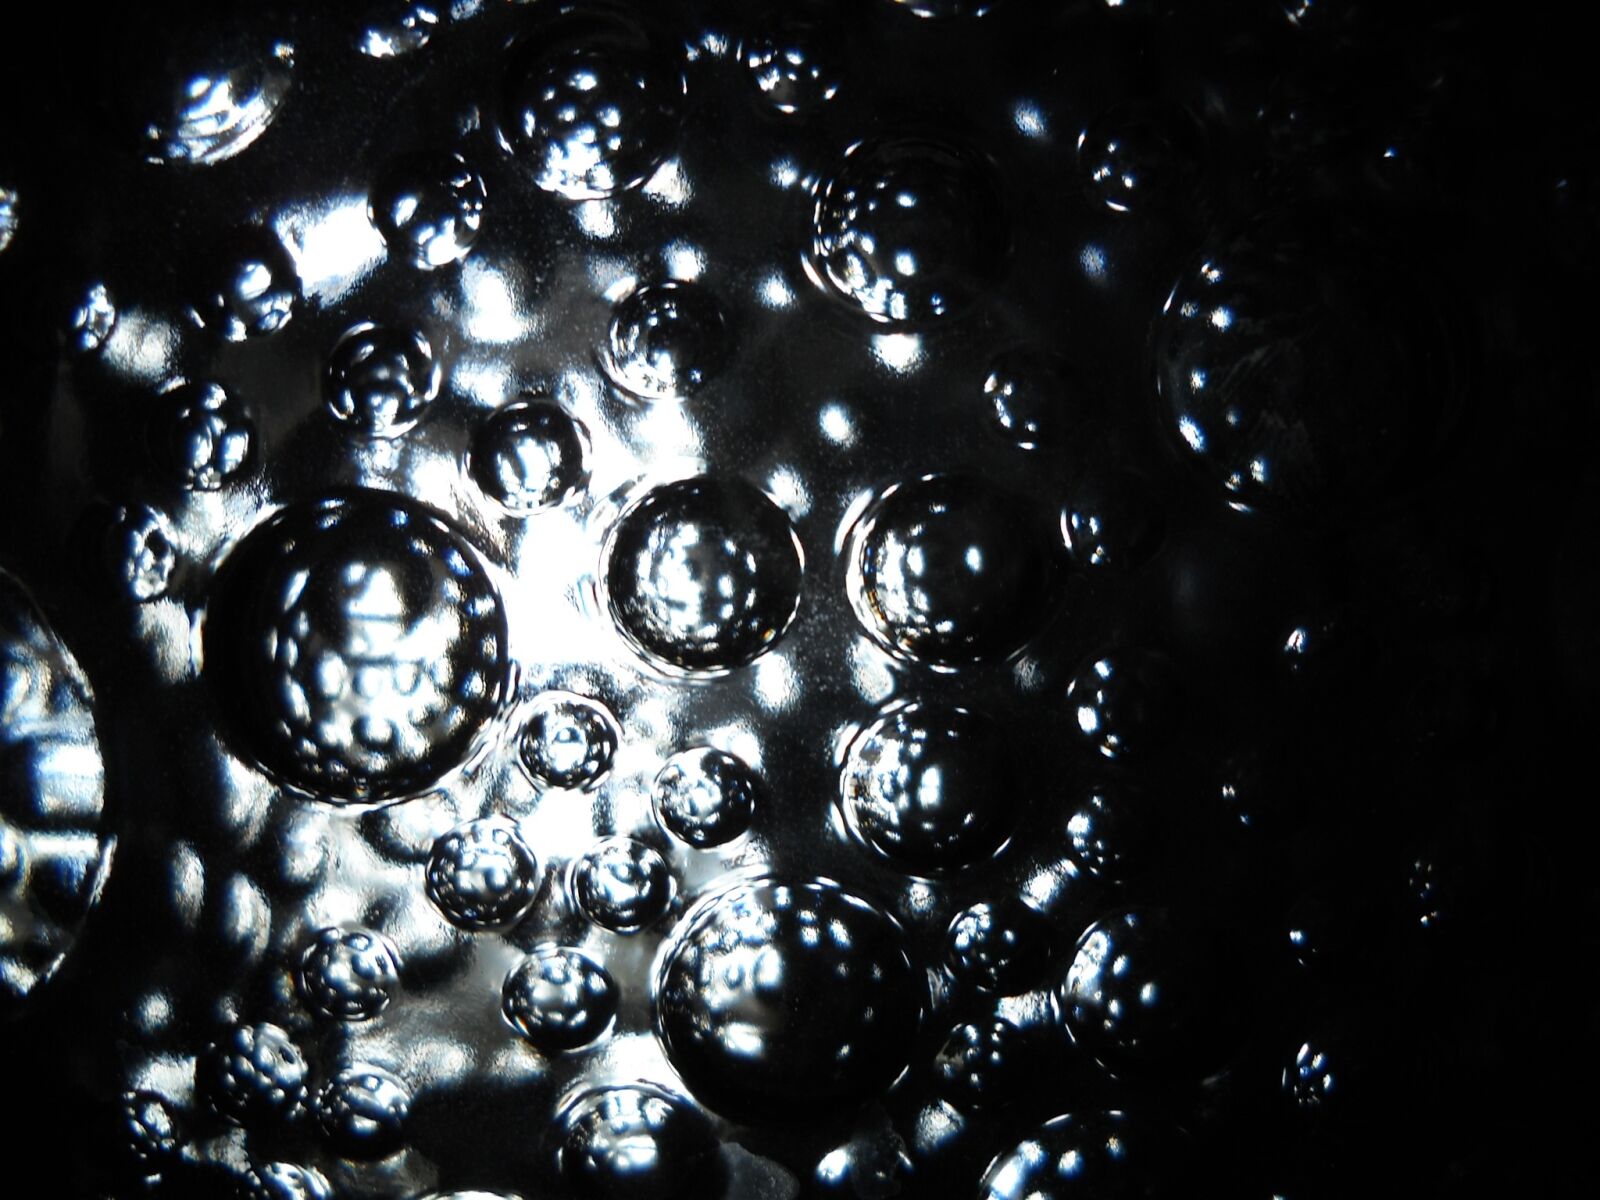 Nikon Coolpix L20 sample photo. Bubbles, space, spheres photography